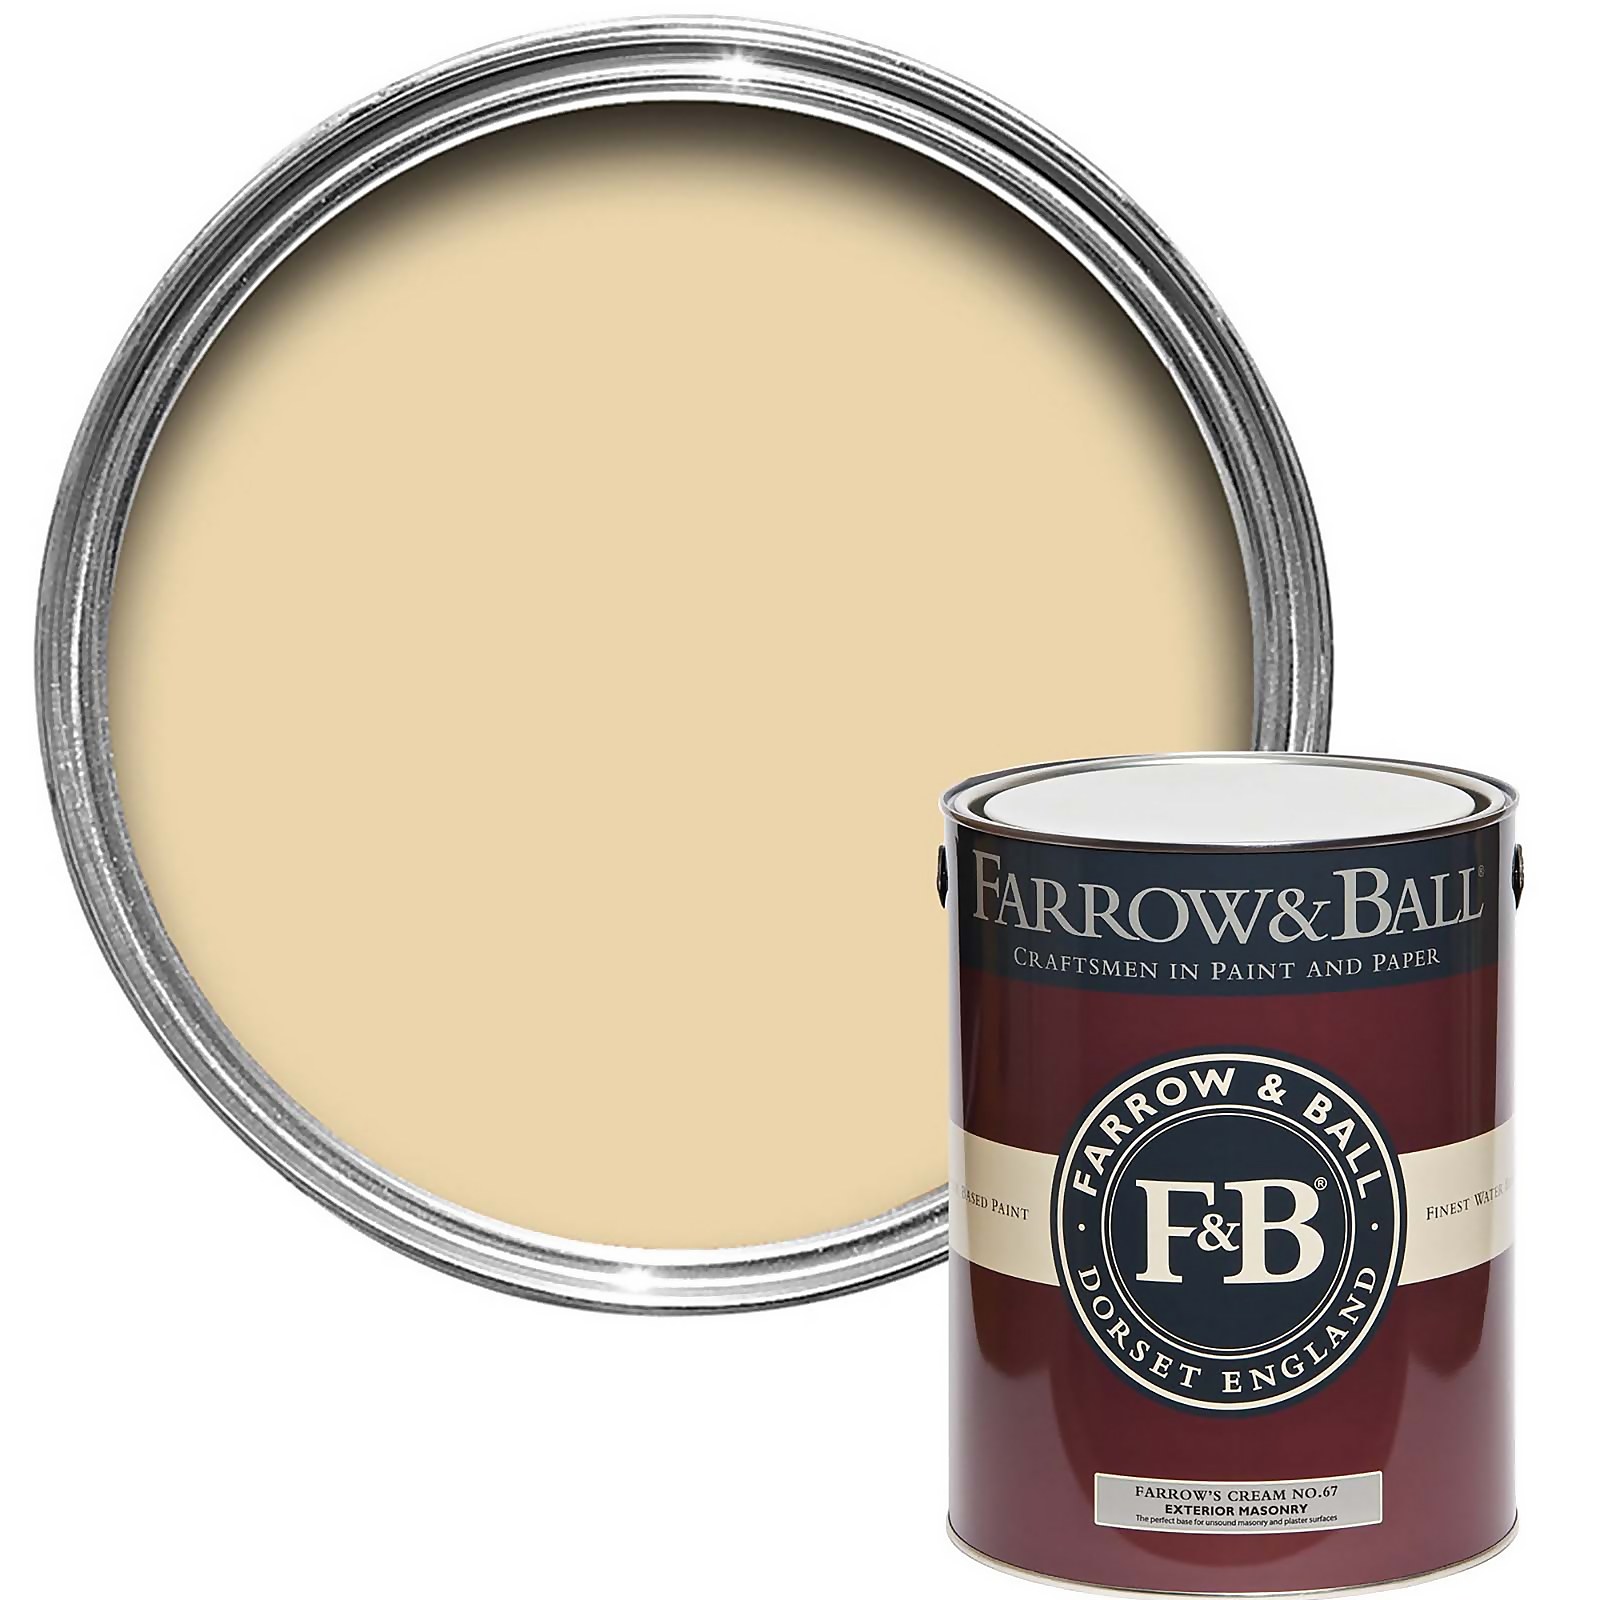 Farrow & Ball Exterior Masonry Paint Farrow's Cream No.67 - 5L